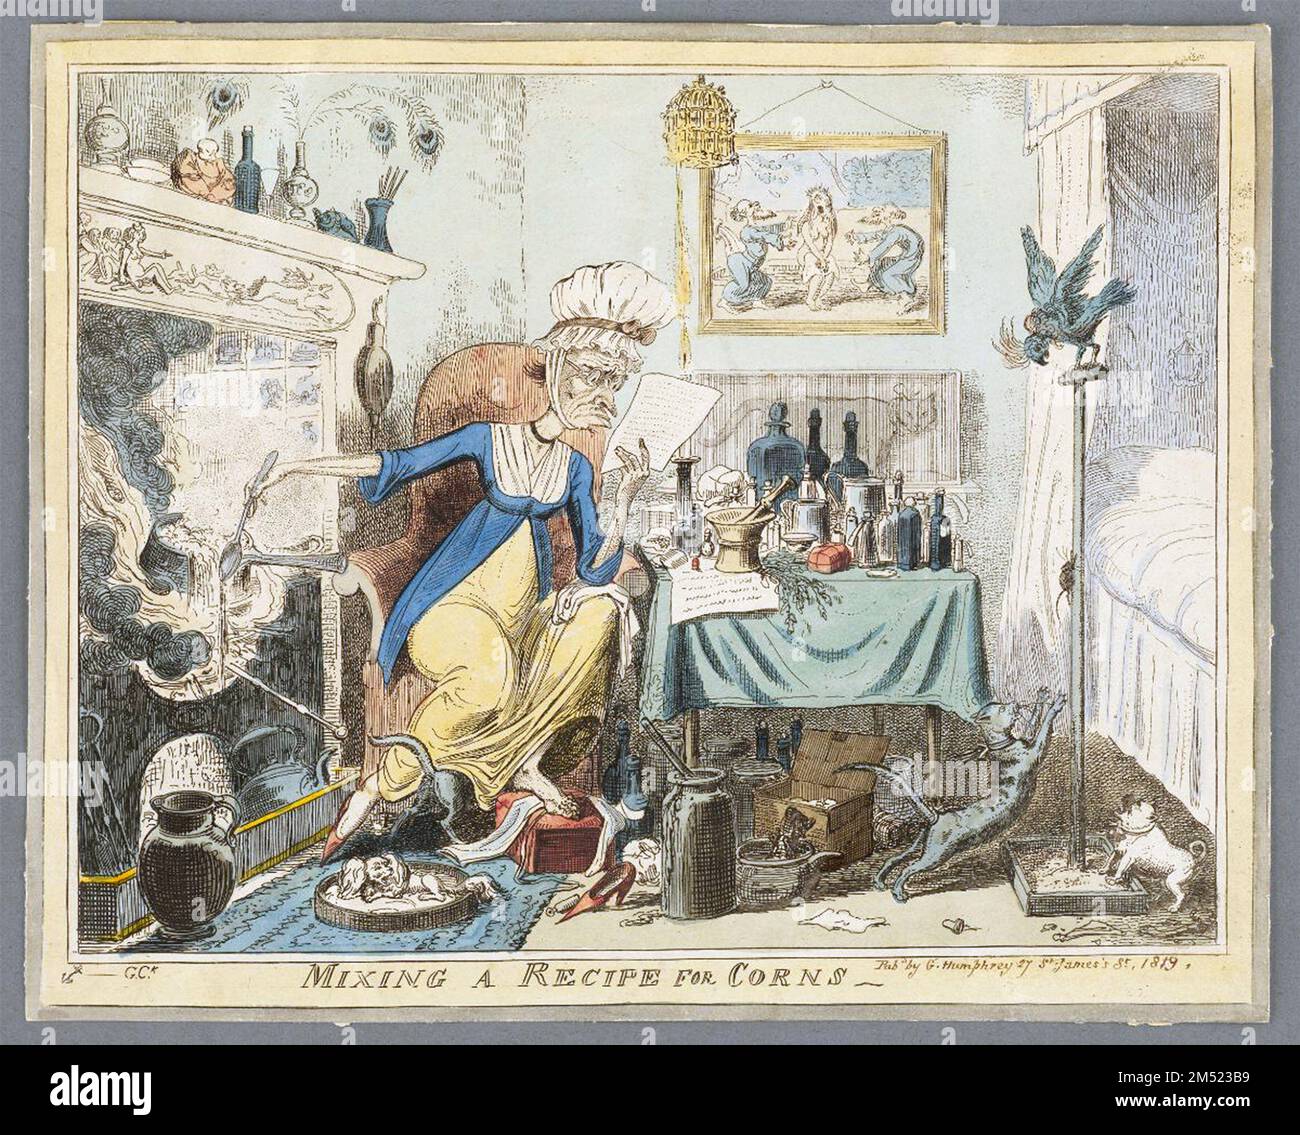 Au milieu du chaos de sa maison, une femme grotesque est obsédée par un remède pour ses cornes tandis que l'artiste George Cruikshank commente les pièges de l'automédication. Publié 1819 Banque D'Images